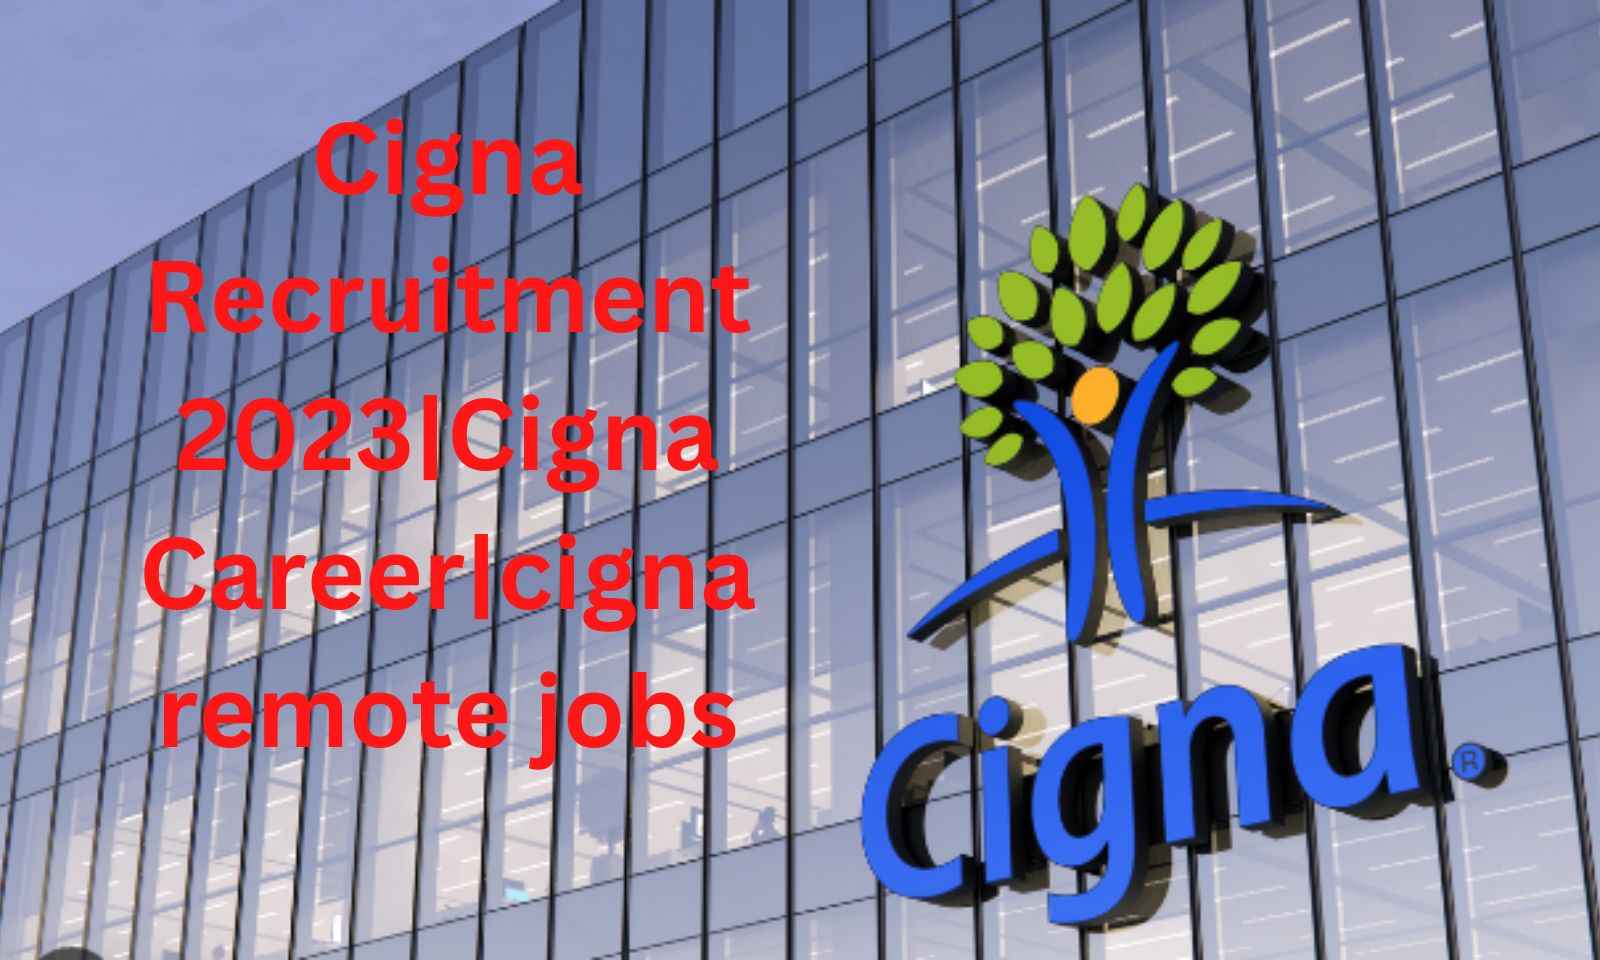 cigna recruitment team